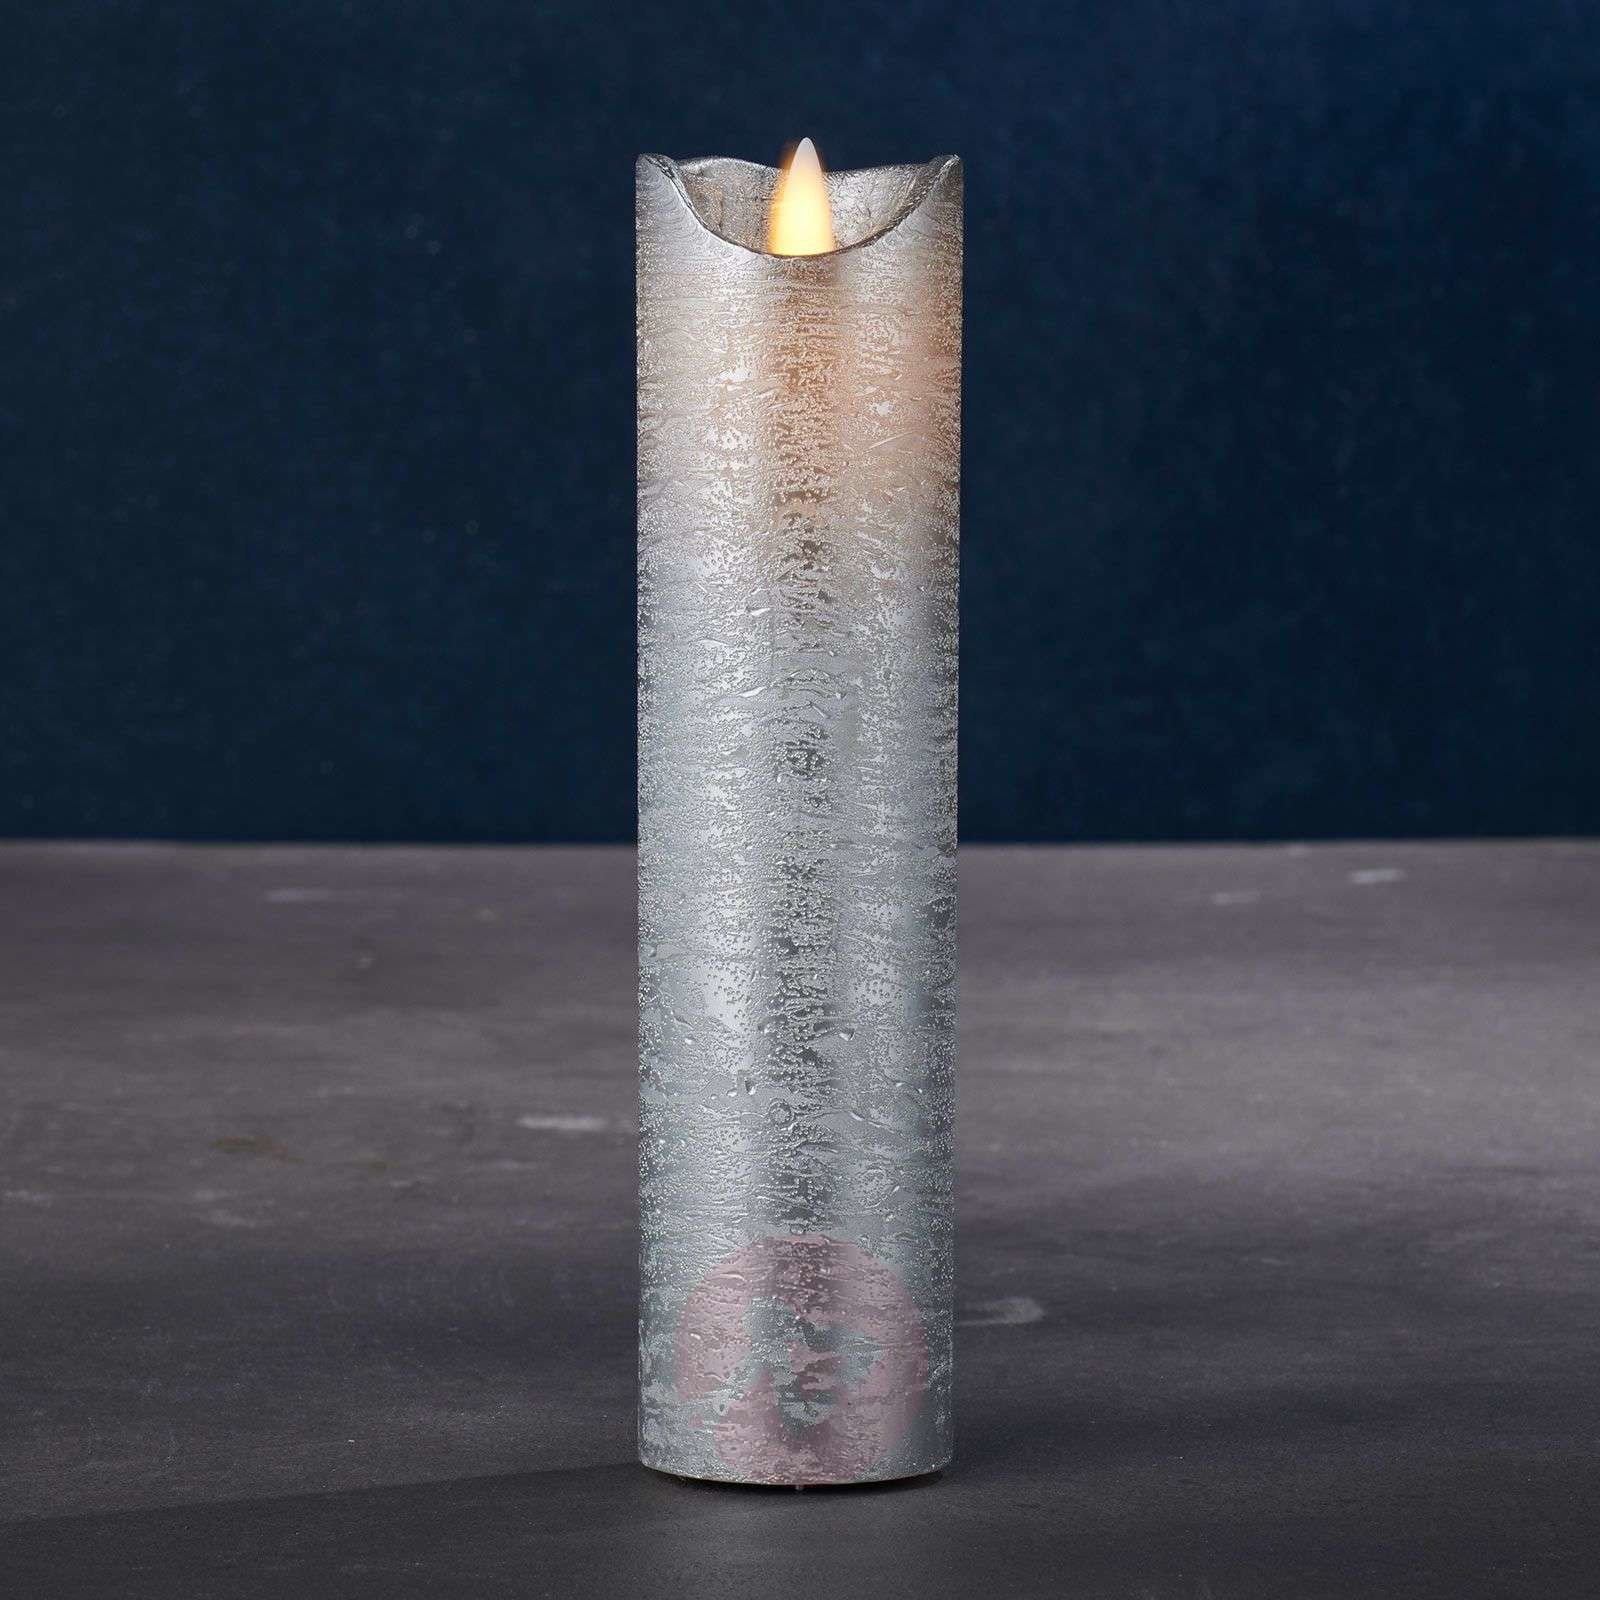 Sirius Świeca LED Sara Exclusive, srebrna, 5cm, 20cm